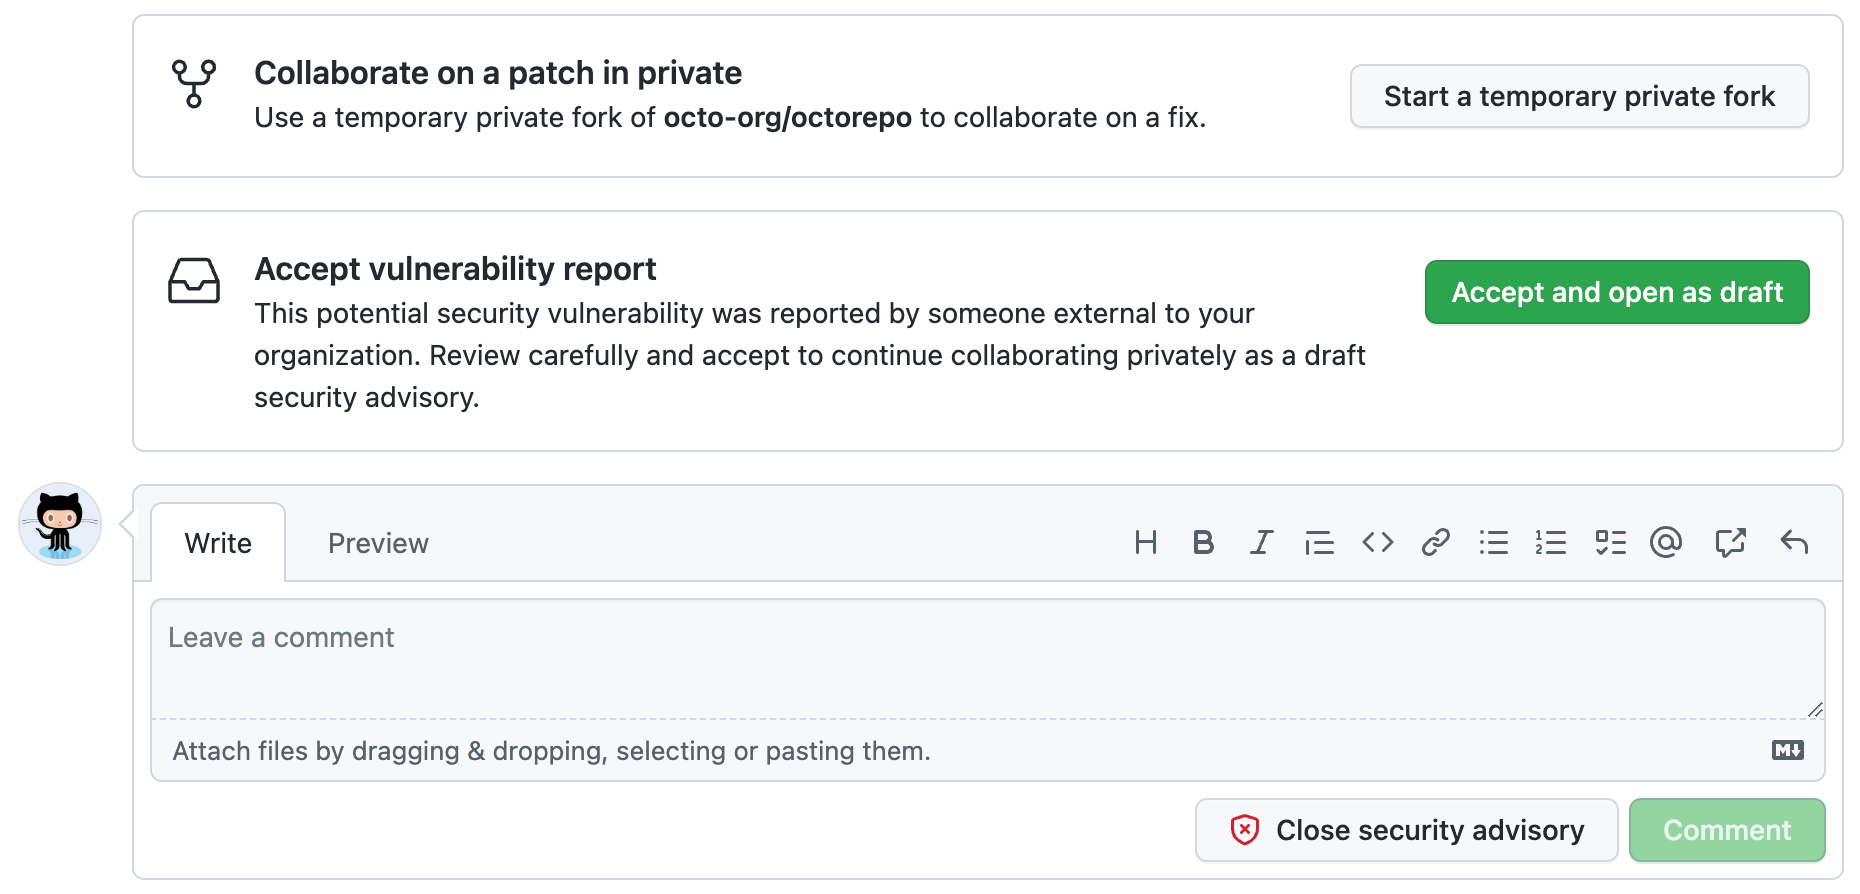 Captura de pantalla en la que se muestran las opciones disponibles para el mantenedor del repositorio al revisar un informe de vulnerabilidades enviado externamente